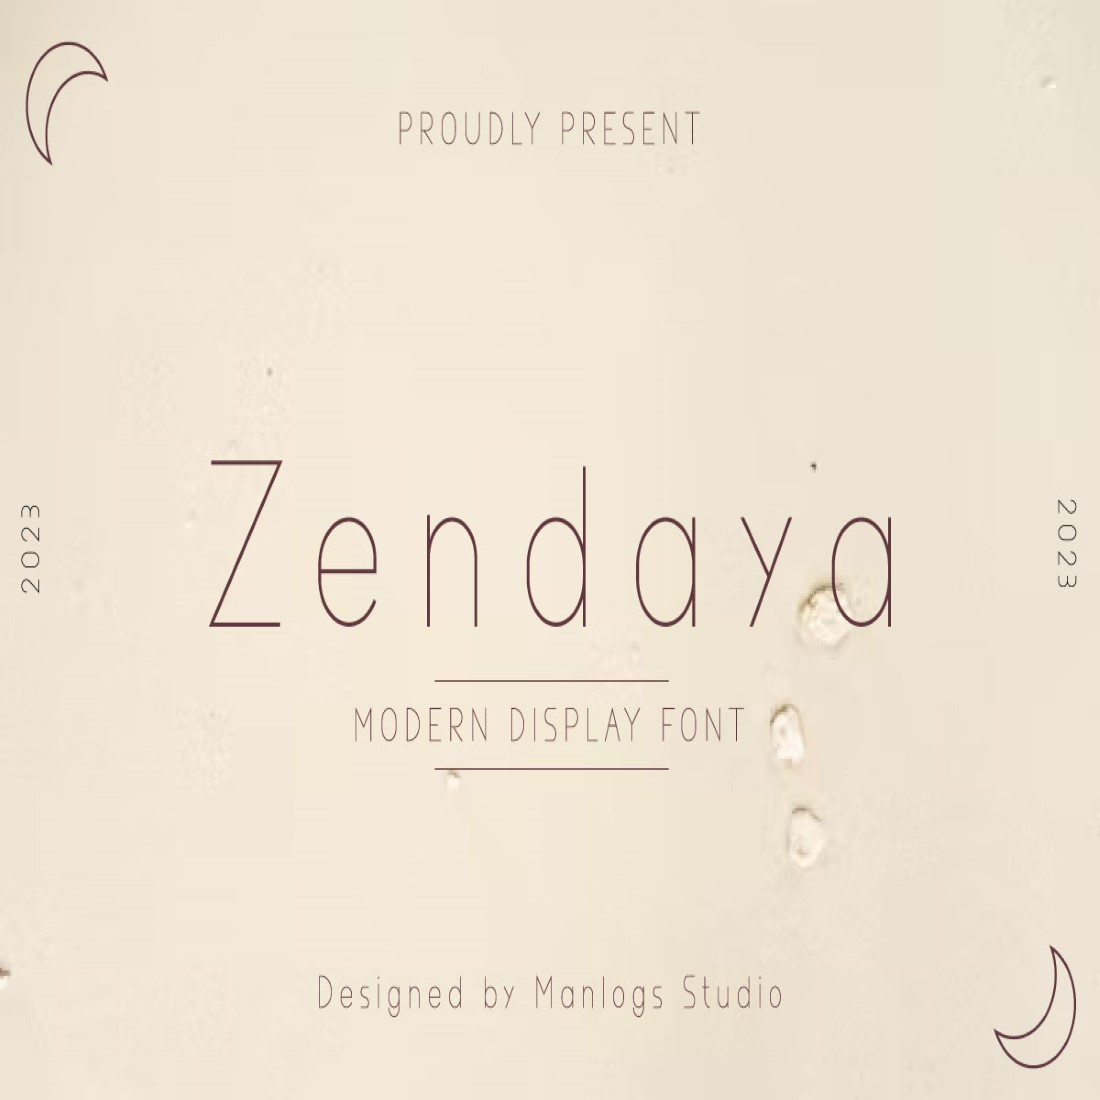 Zendaya cover image.